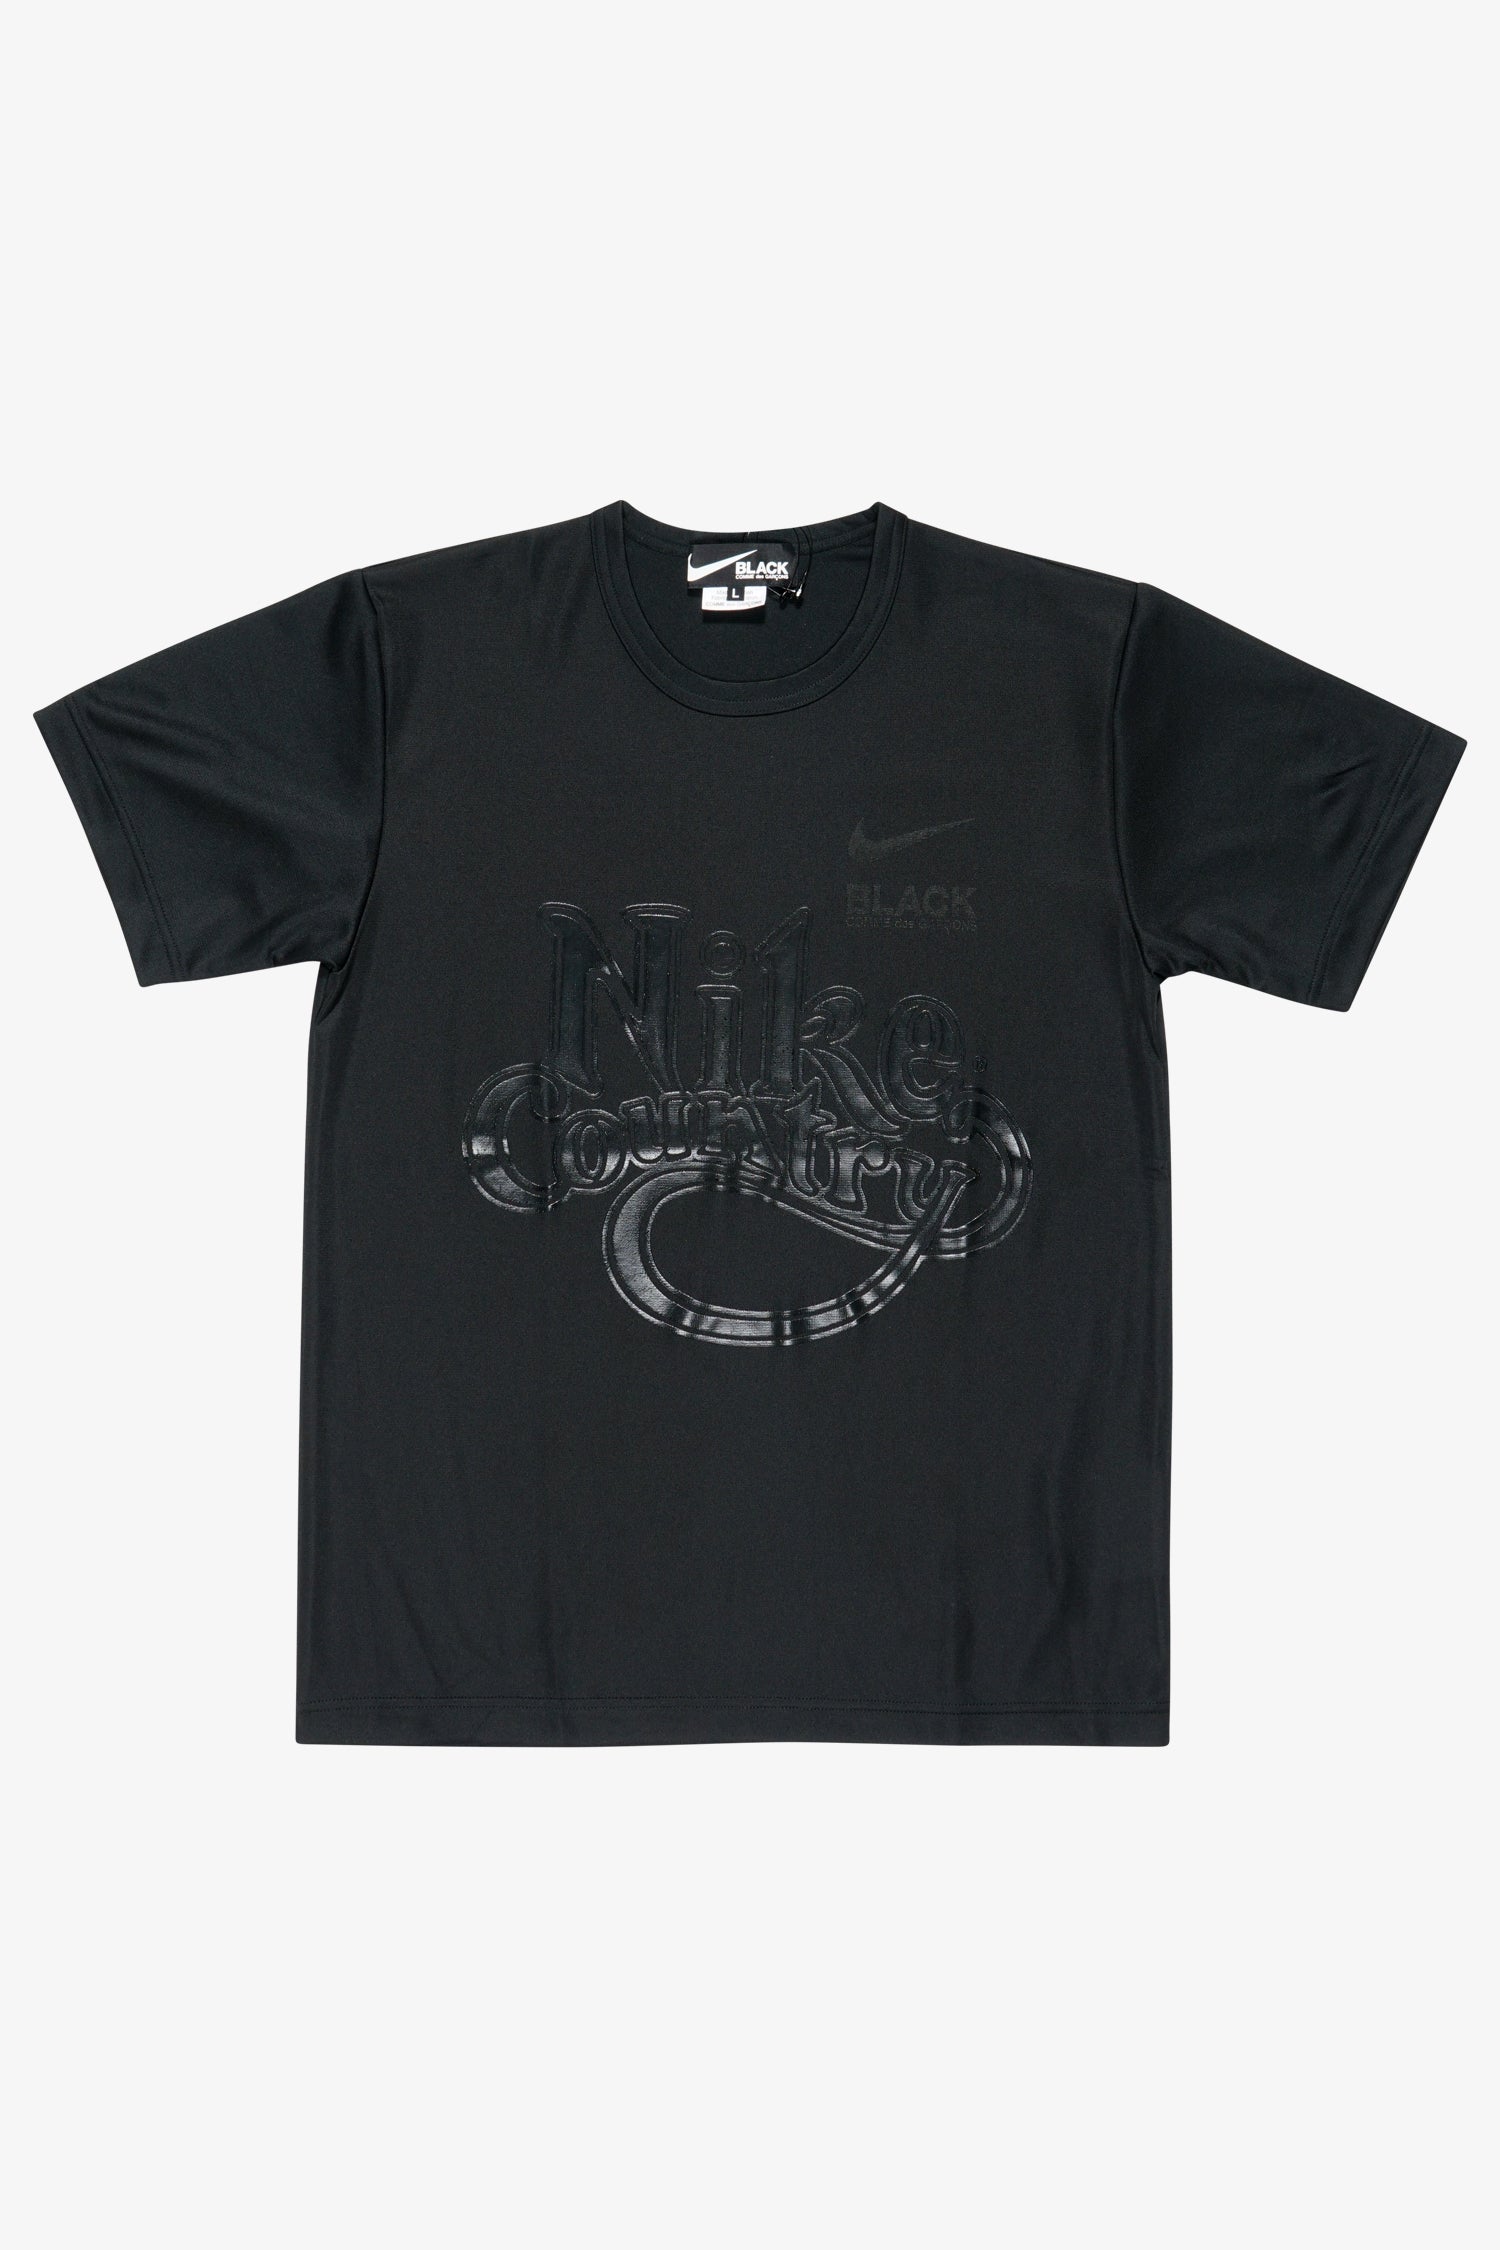 Selectshop FRAME - COMME DES GARCONS BLACK Nike Country T-Shirt T-Shirt Dubai